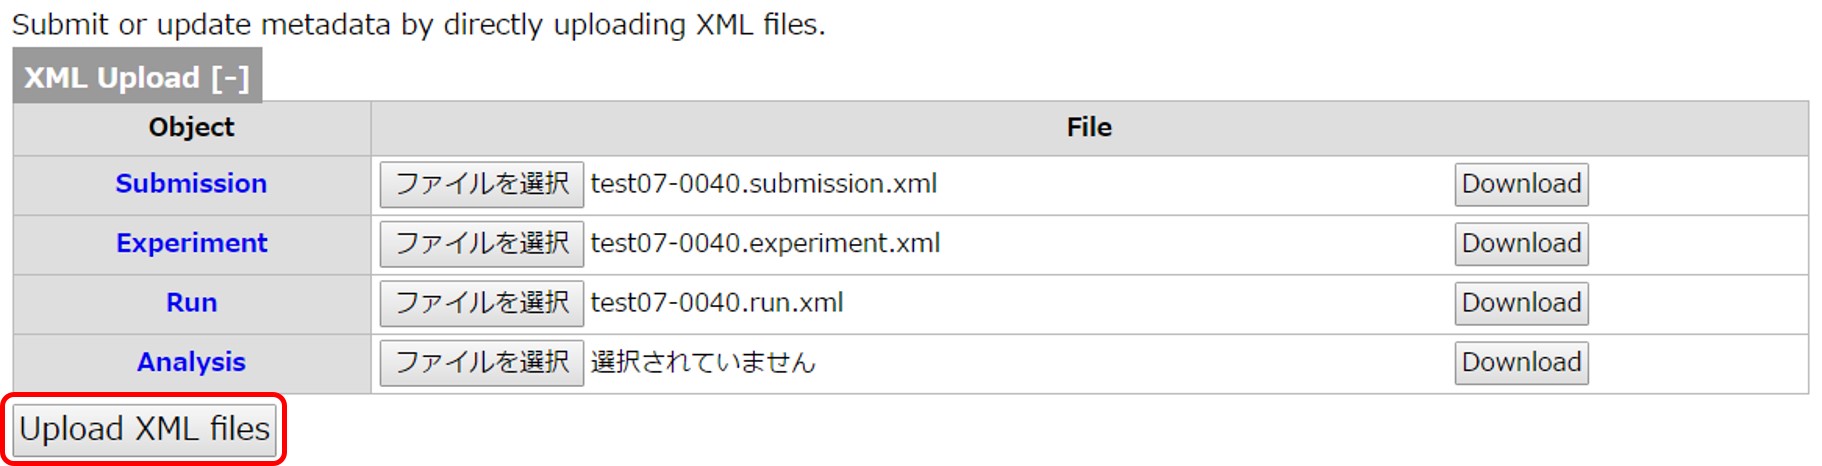 作成した XML のアップロード